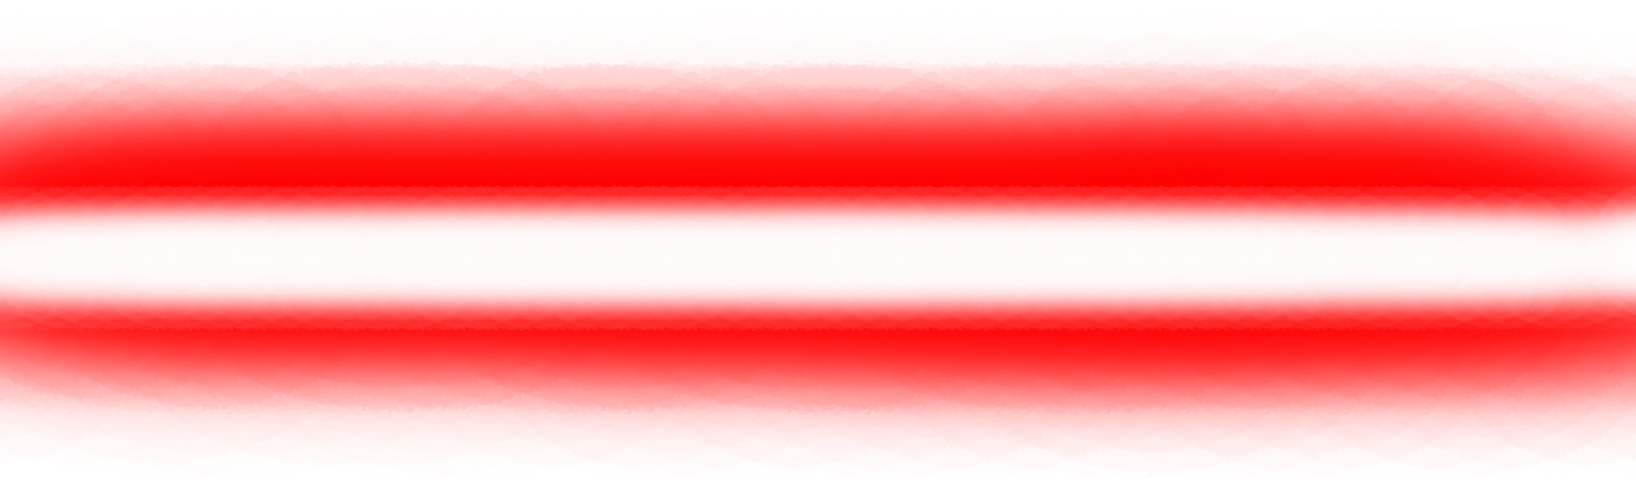 Laser PNG Image File